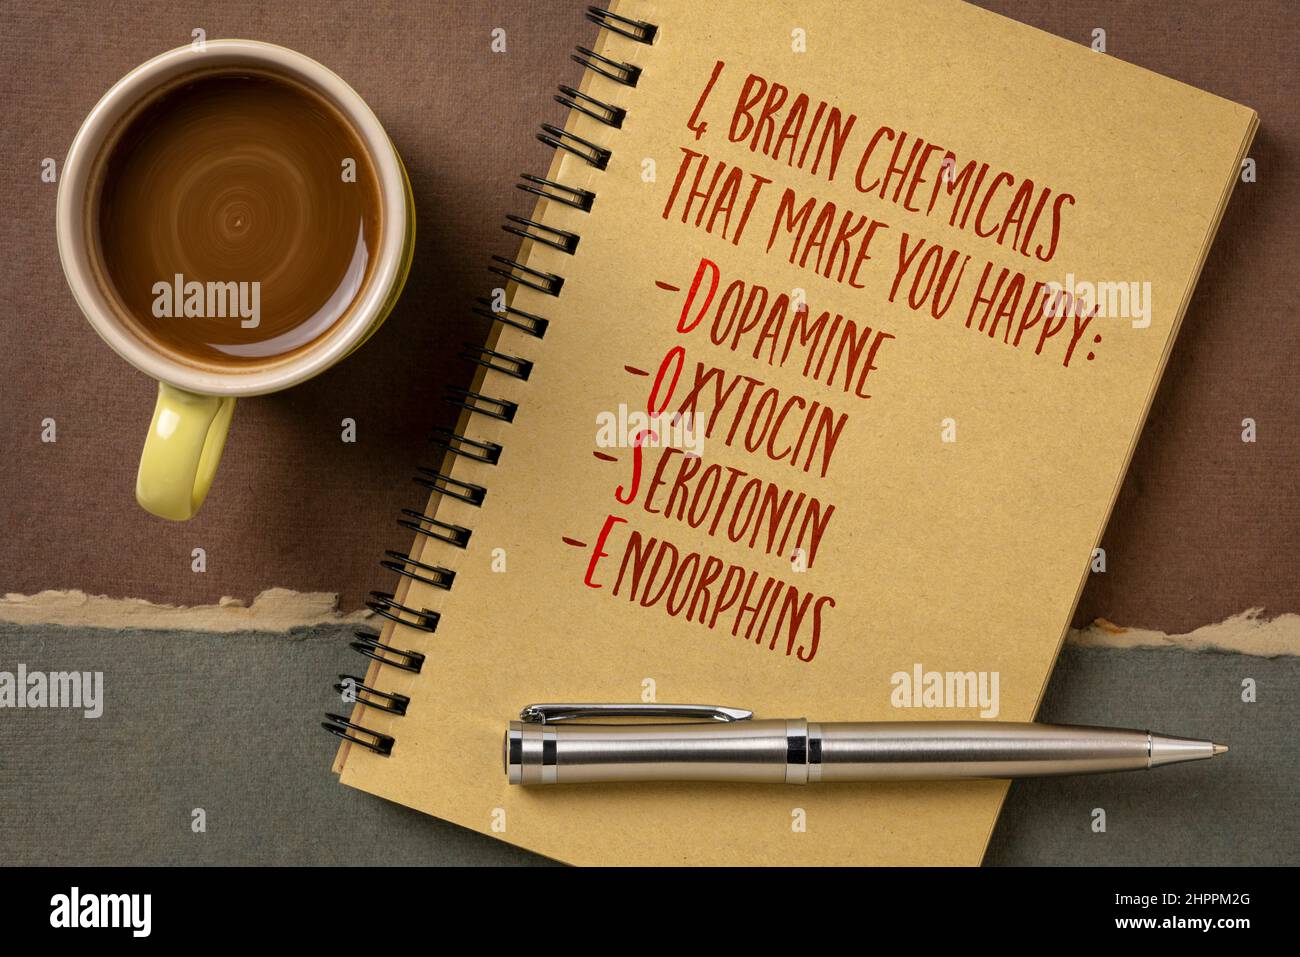 DOSE - dopamina, ossitocina, serotonina e endorfine, quattro sostanze chimiche cerebrali che ti rendono felice, scrittura a mano in un libro di schizzo con una tazza di caffè, chemi Foto Stock